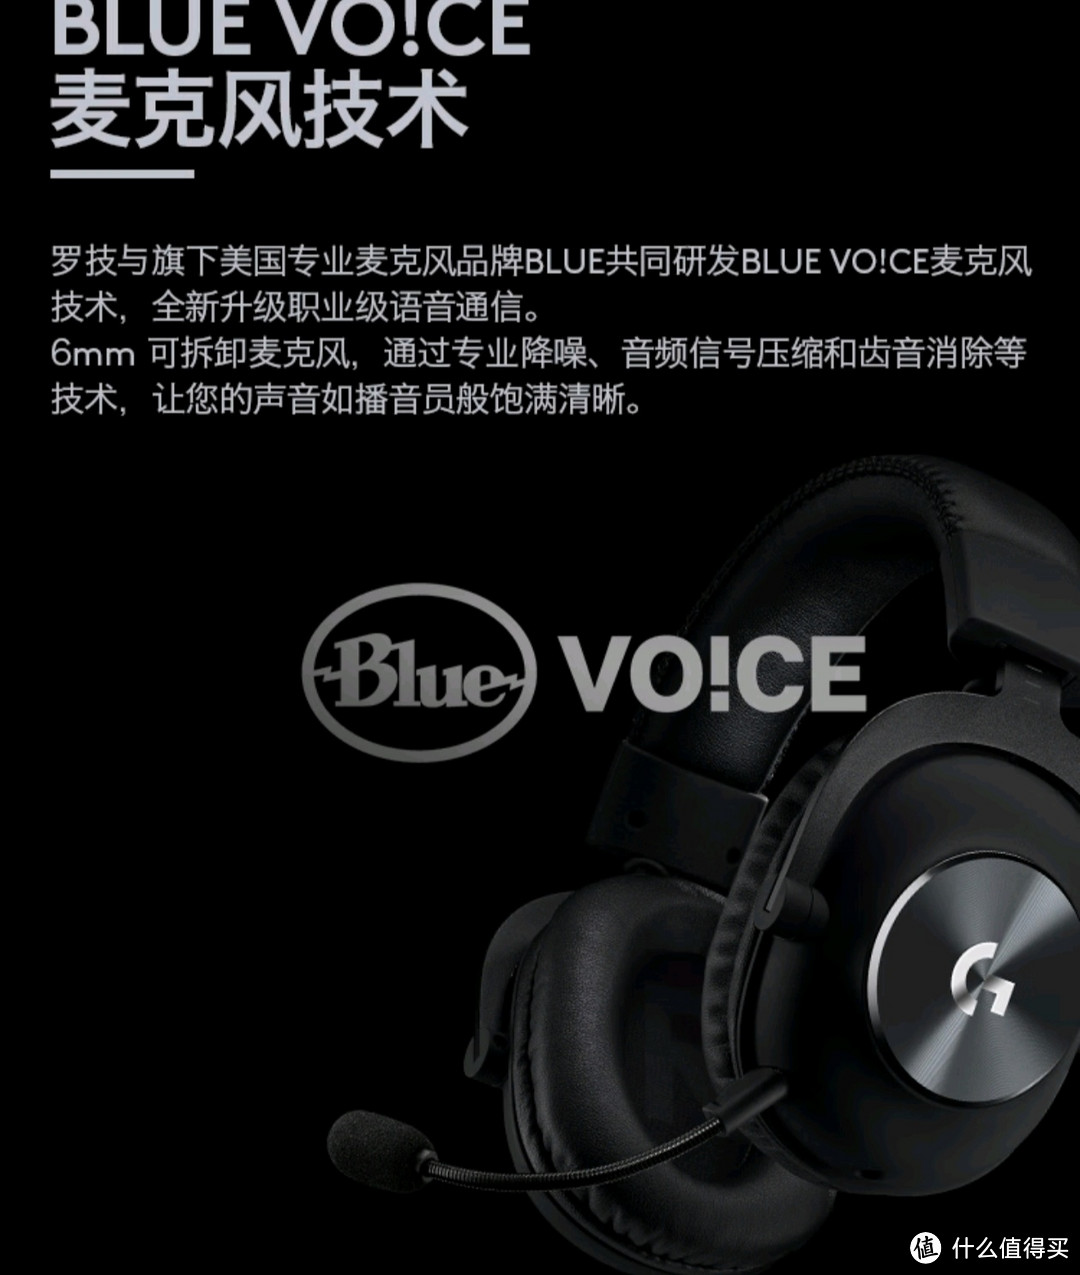 罗技G PROX 头戴式游戏耳机麦克风 虚拟7.1环绕声电竞耳机耳麦 降噪声卡线控麦克风 LOL吃鸡FPS听声辩位